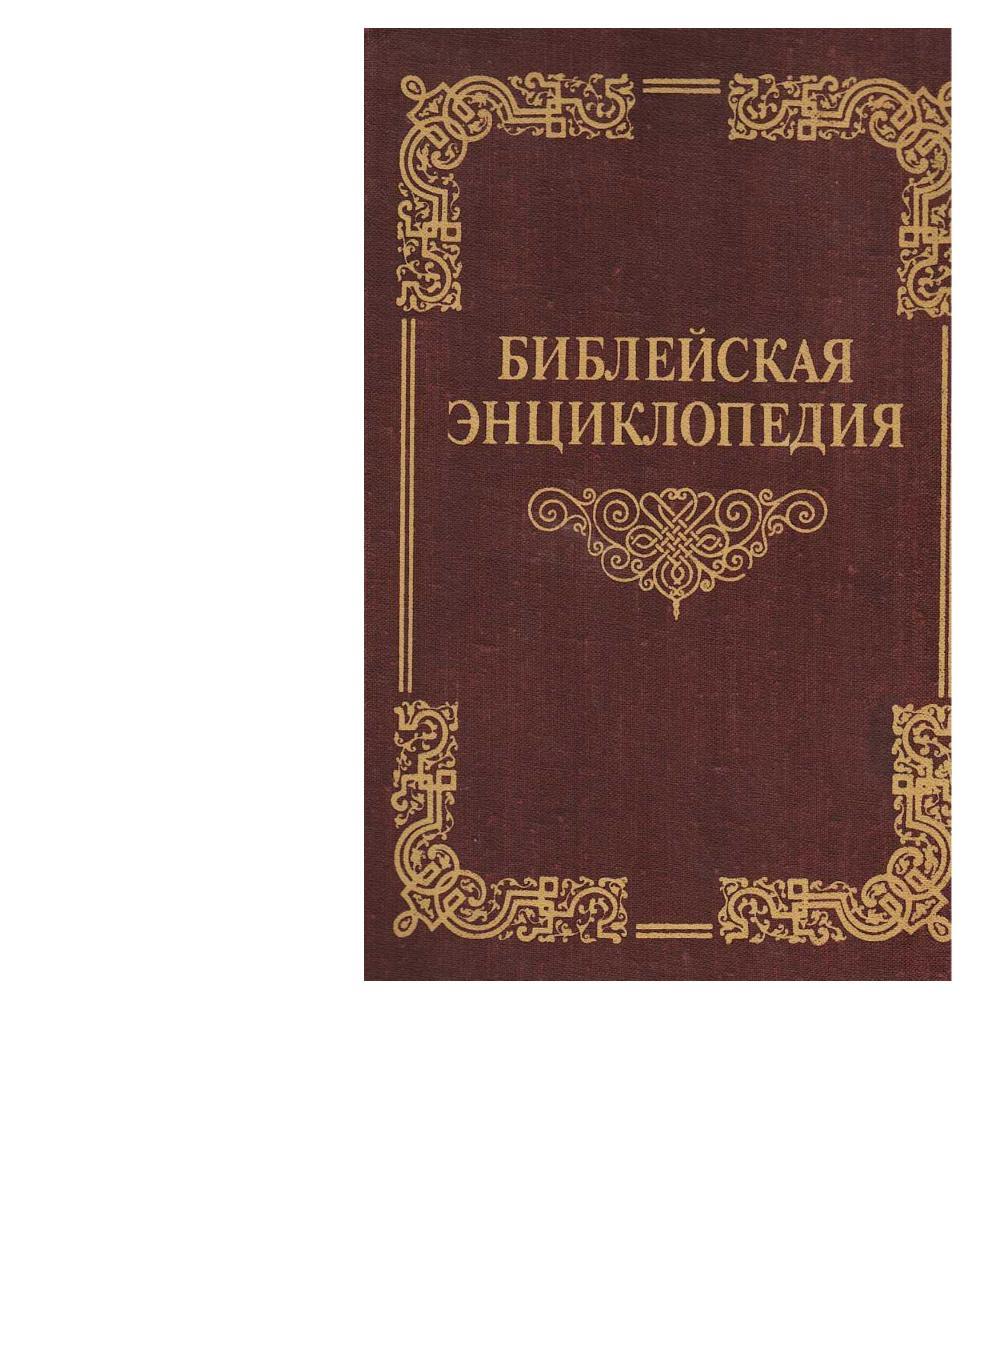 Библейская энциклопедия. Труд и издание Архимандрита Никифорова.